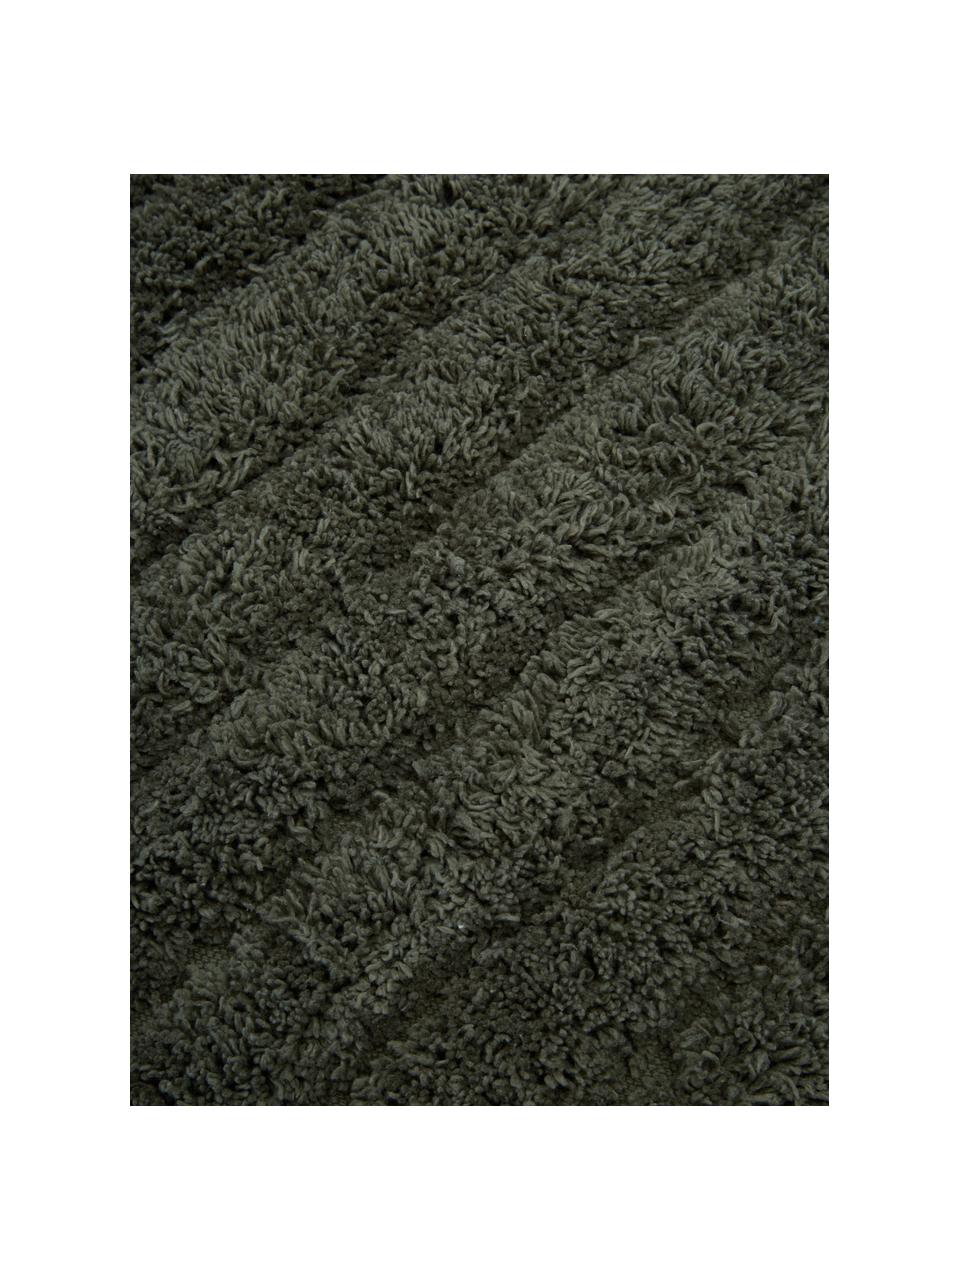 Fluffy badmat Board in donkergroen, 100% katoen
Zware kwaliteit, 1900 g/m², Groen, B 60 x L 90 cm